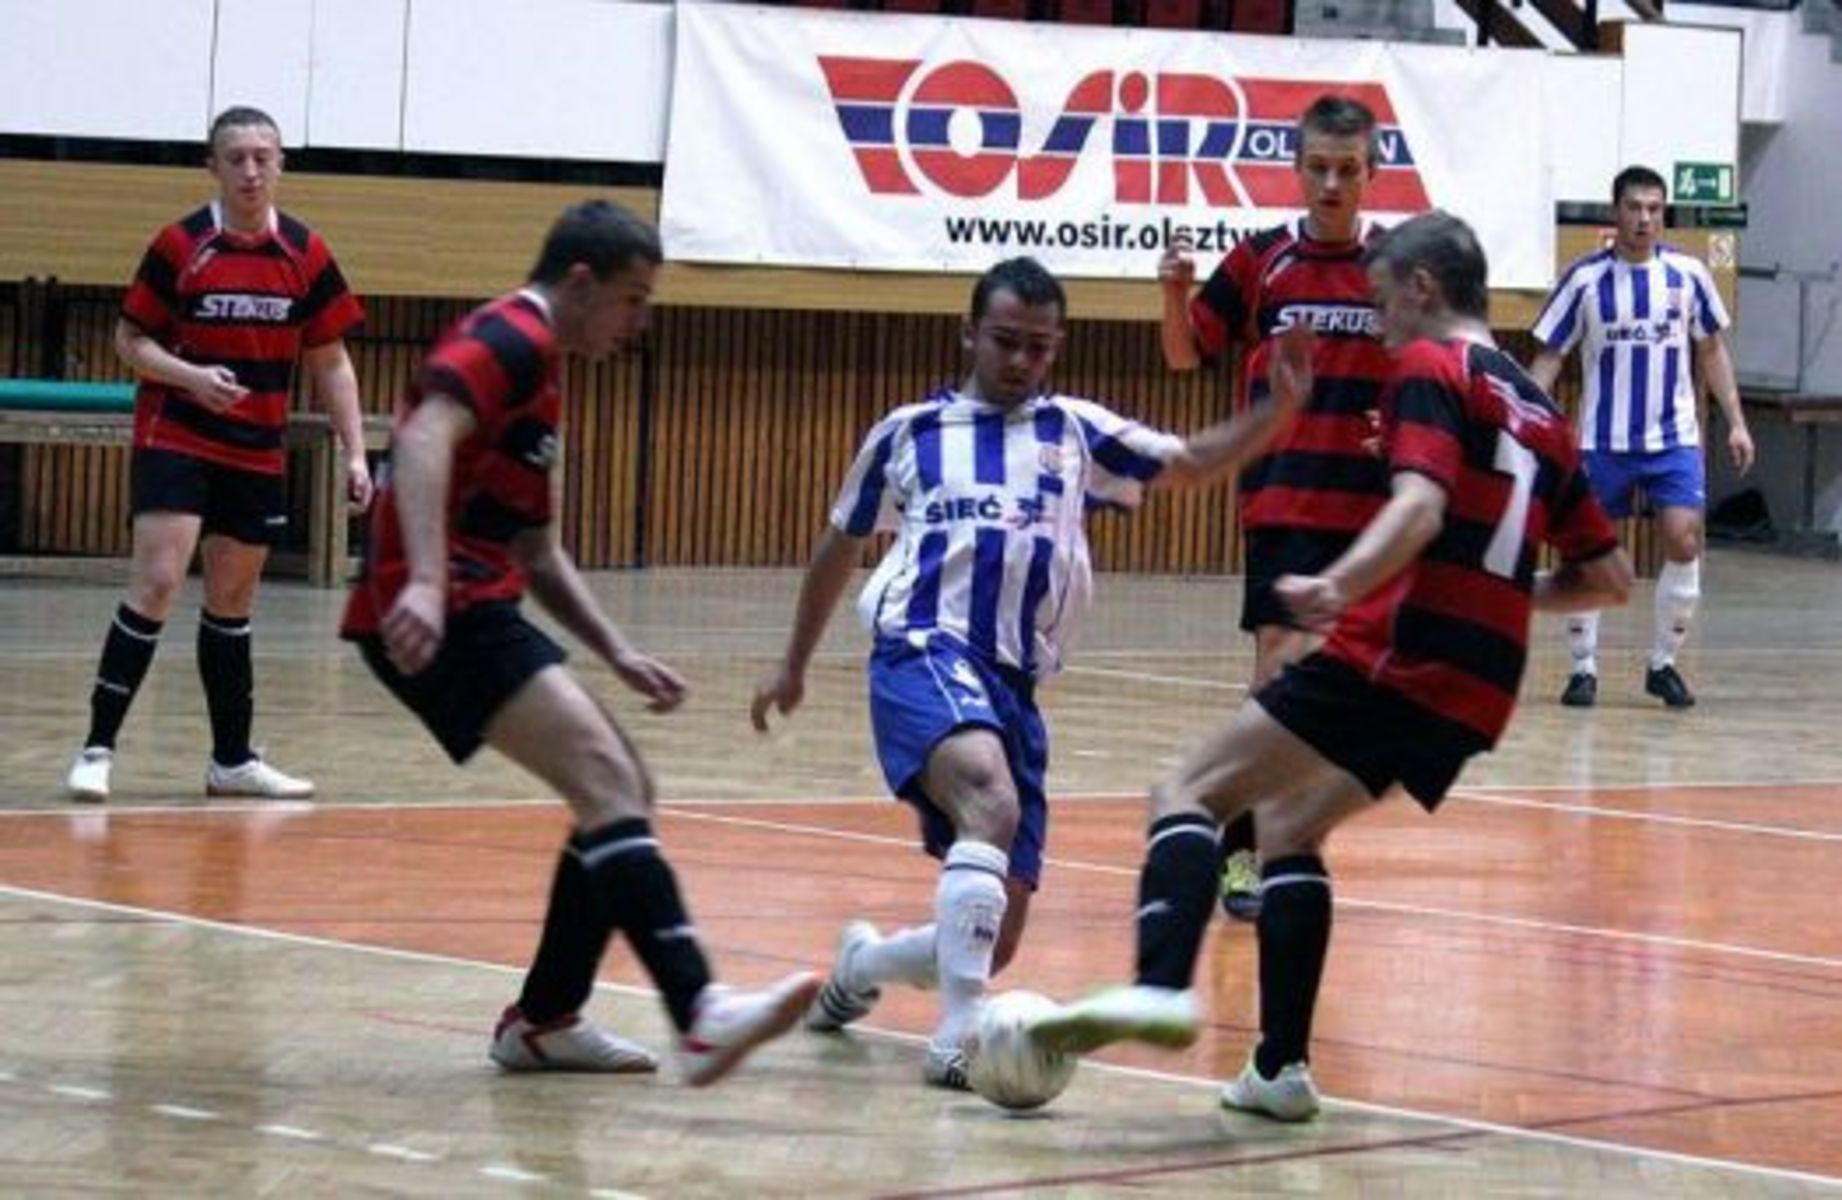 Warmińsko-mazurska III Polska Liga Futsalu miała wypełnić kibicom czas podczas zimowej przerwy w graniu na trawie. Niestety, rozgrywki okazały się wielkim niewypałem.